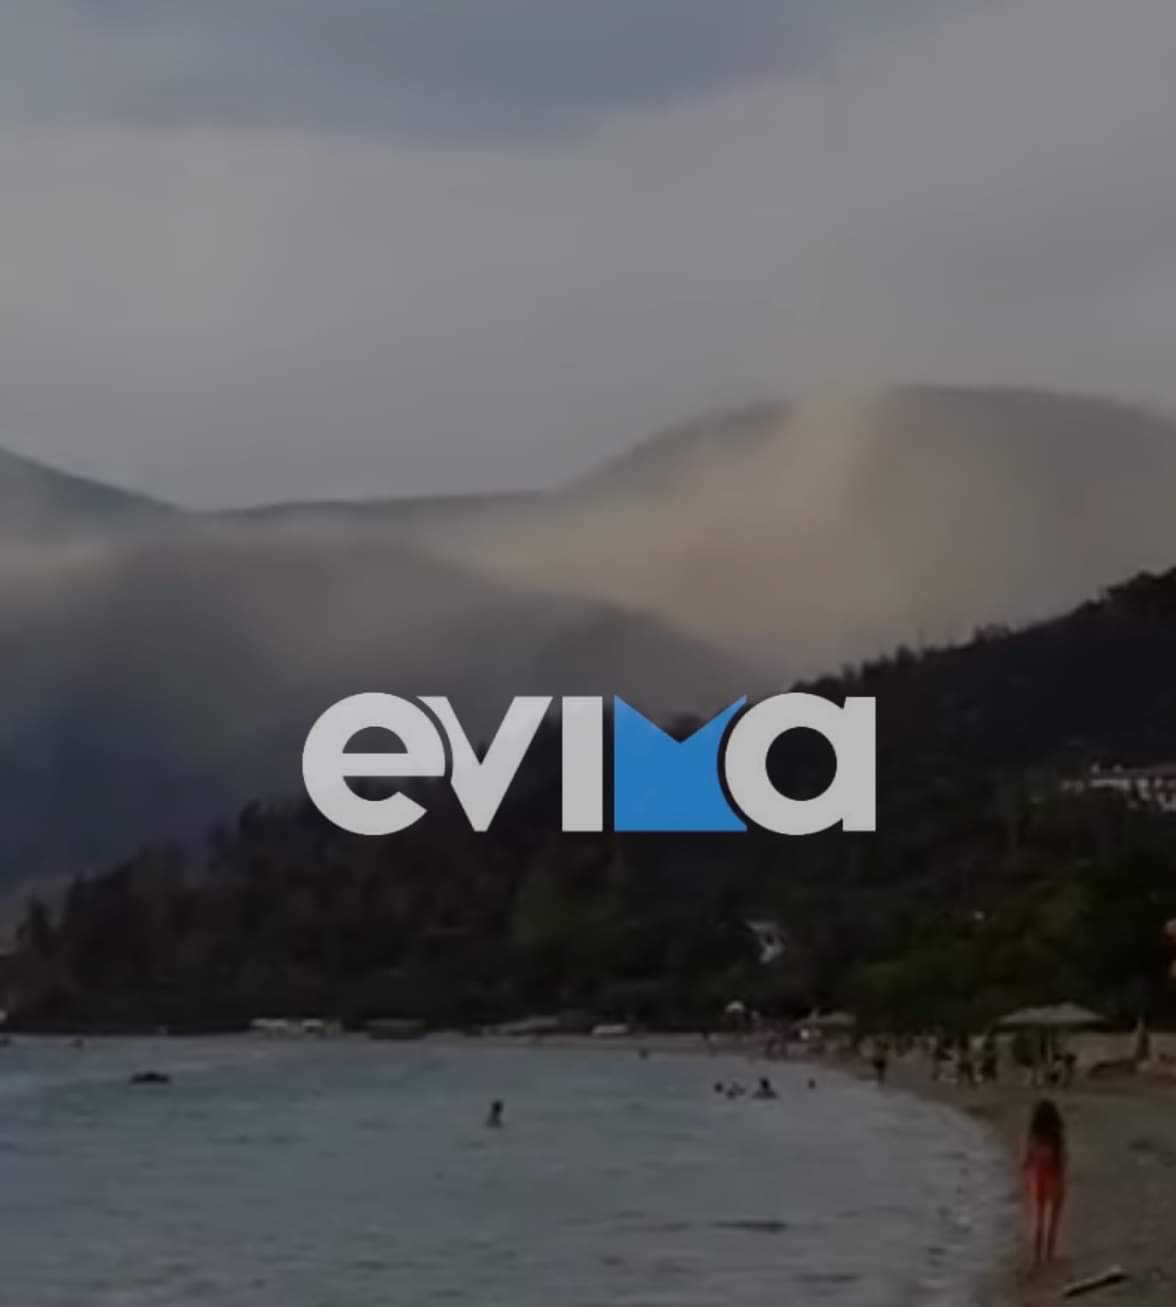 Ροβιές: Σύννεφο στάχτης από τα καμμένα σκέπασε την παραλία [εικόνες]